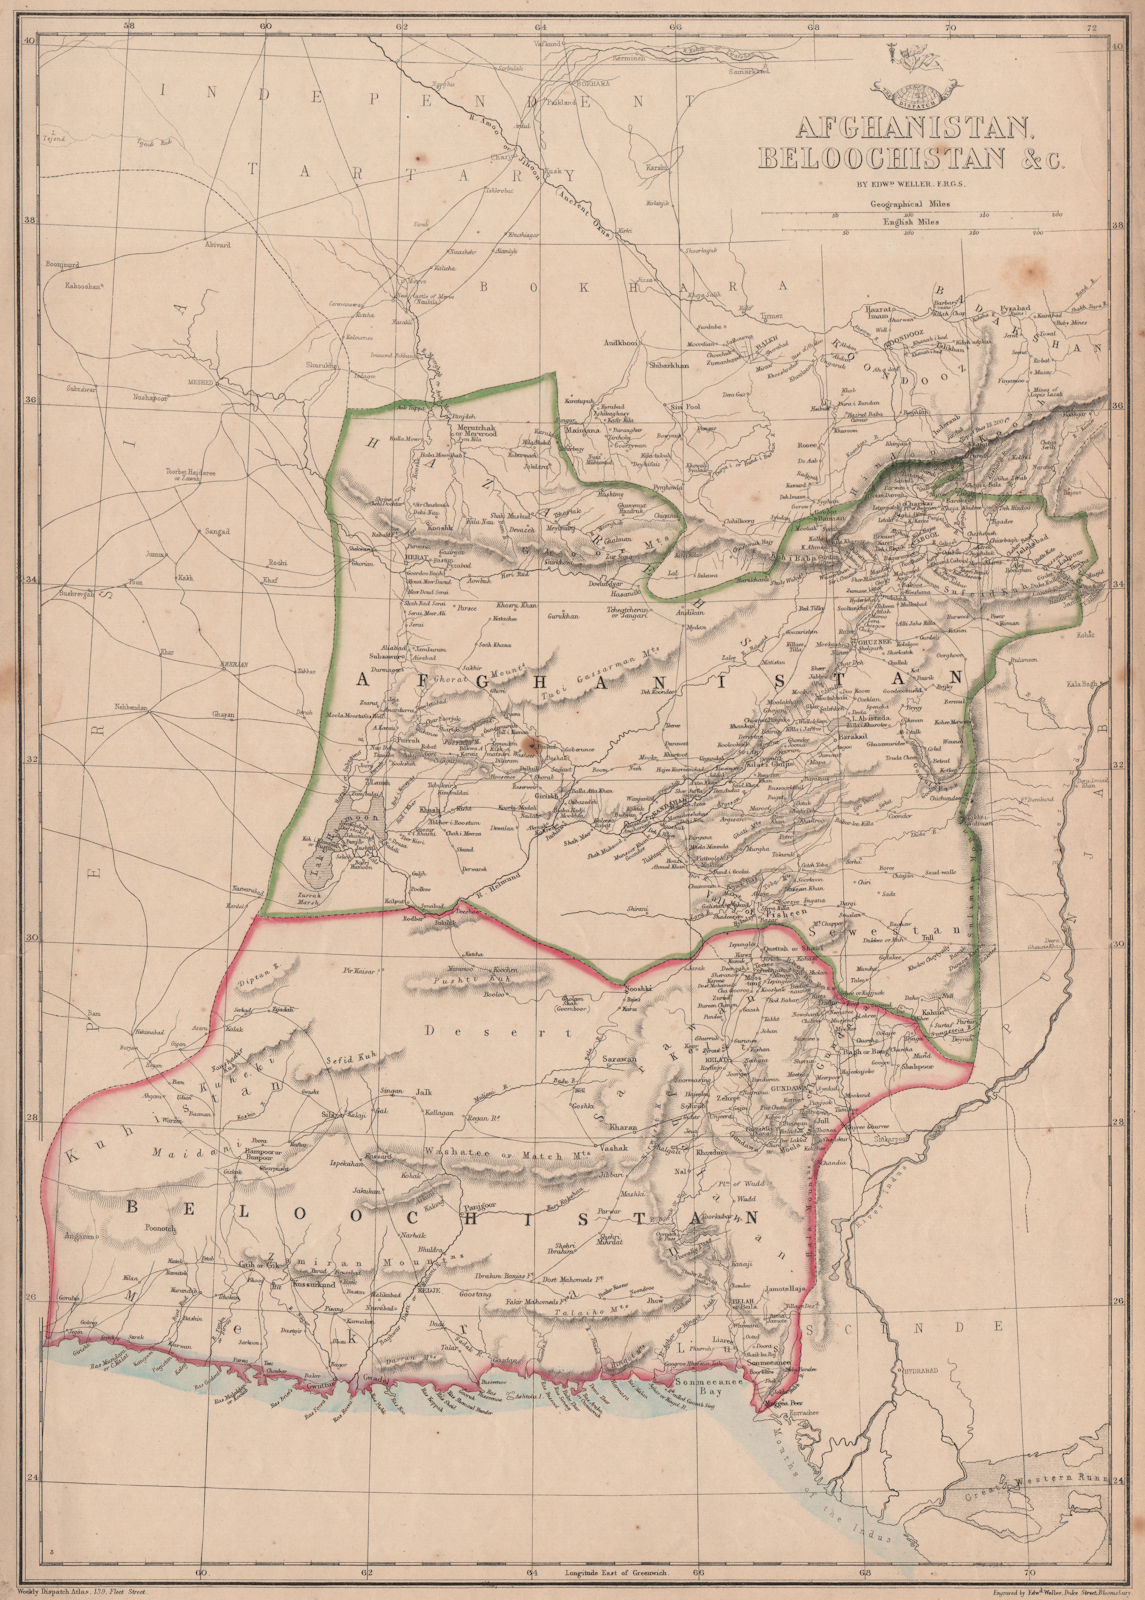 AFGHANISTAN & BELOOCHISTAN. Pakistan. Kabul Karachi Quetta. WELLER 1863 map